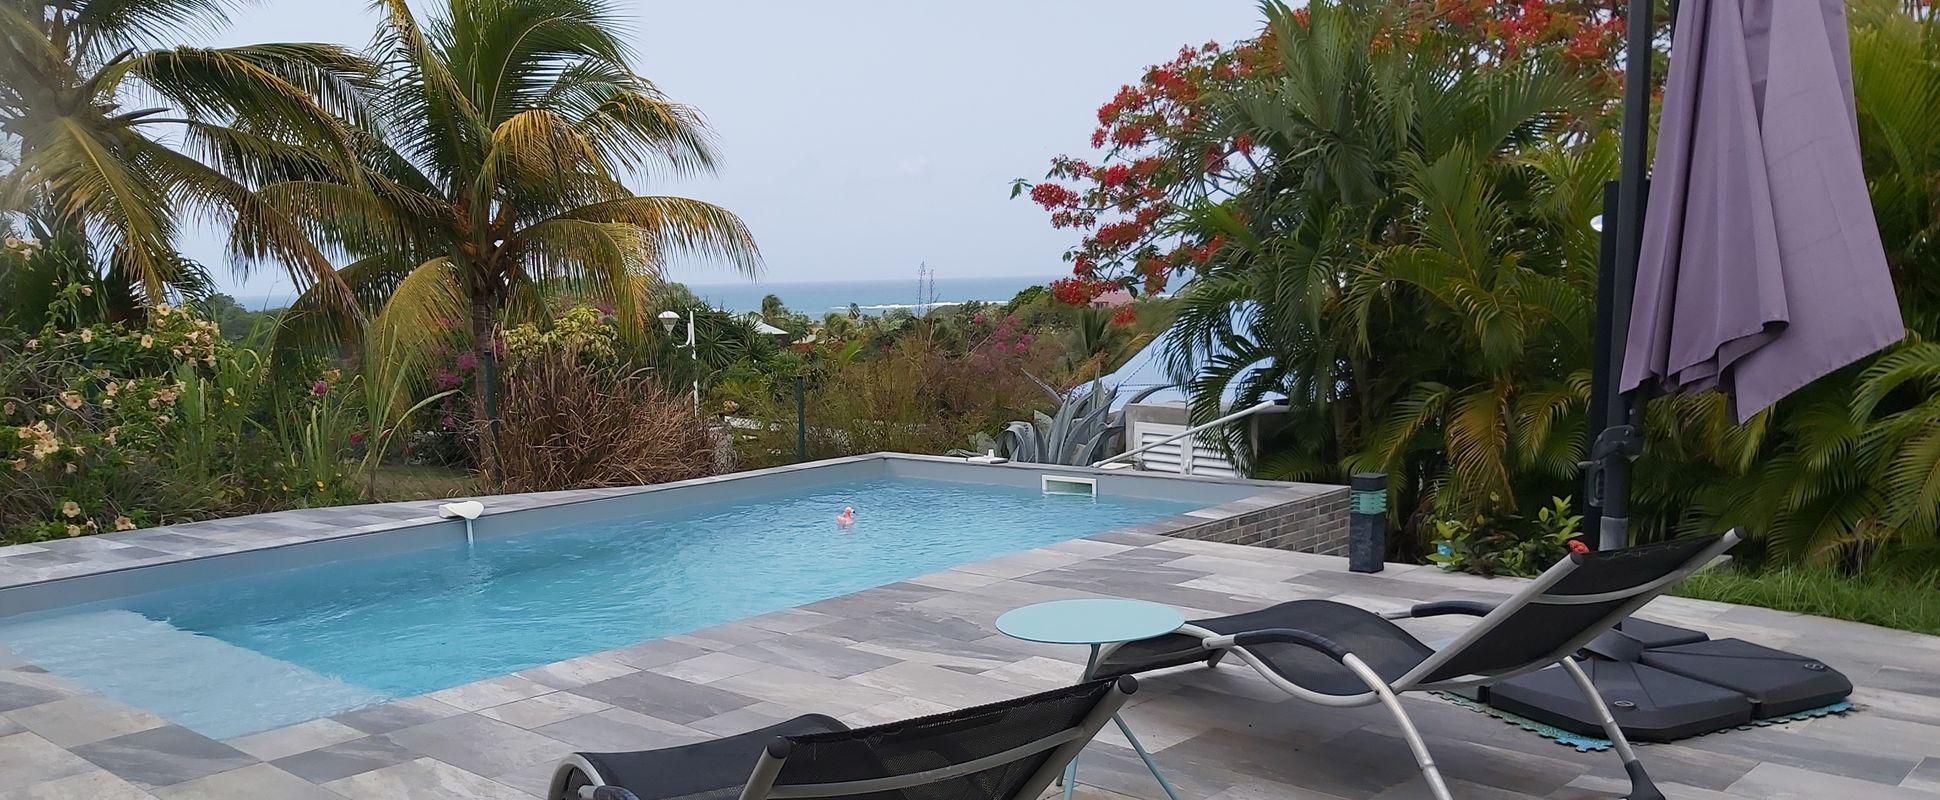 Location villa Guadeloupe